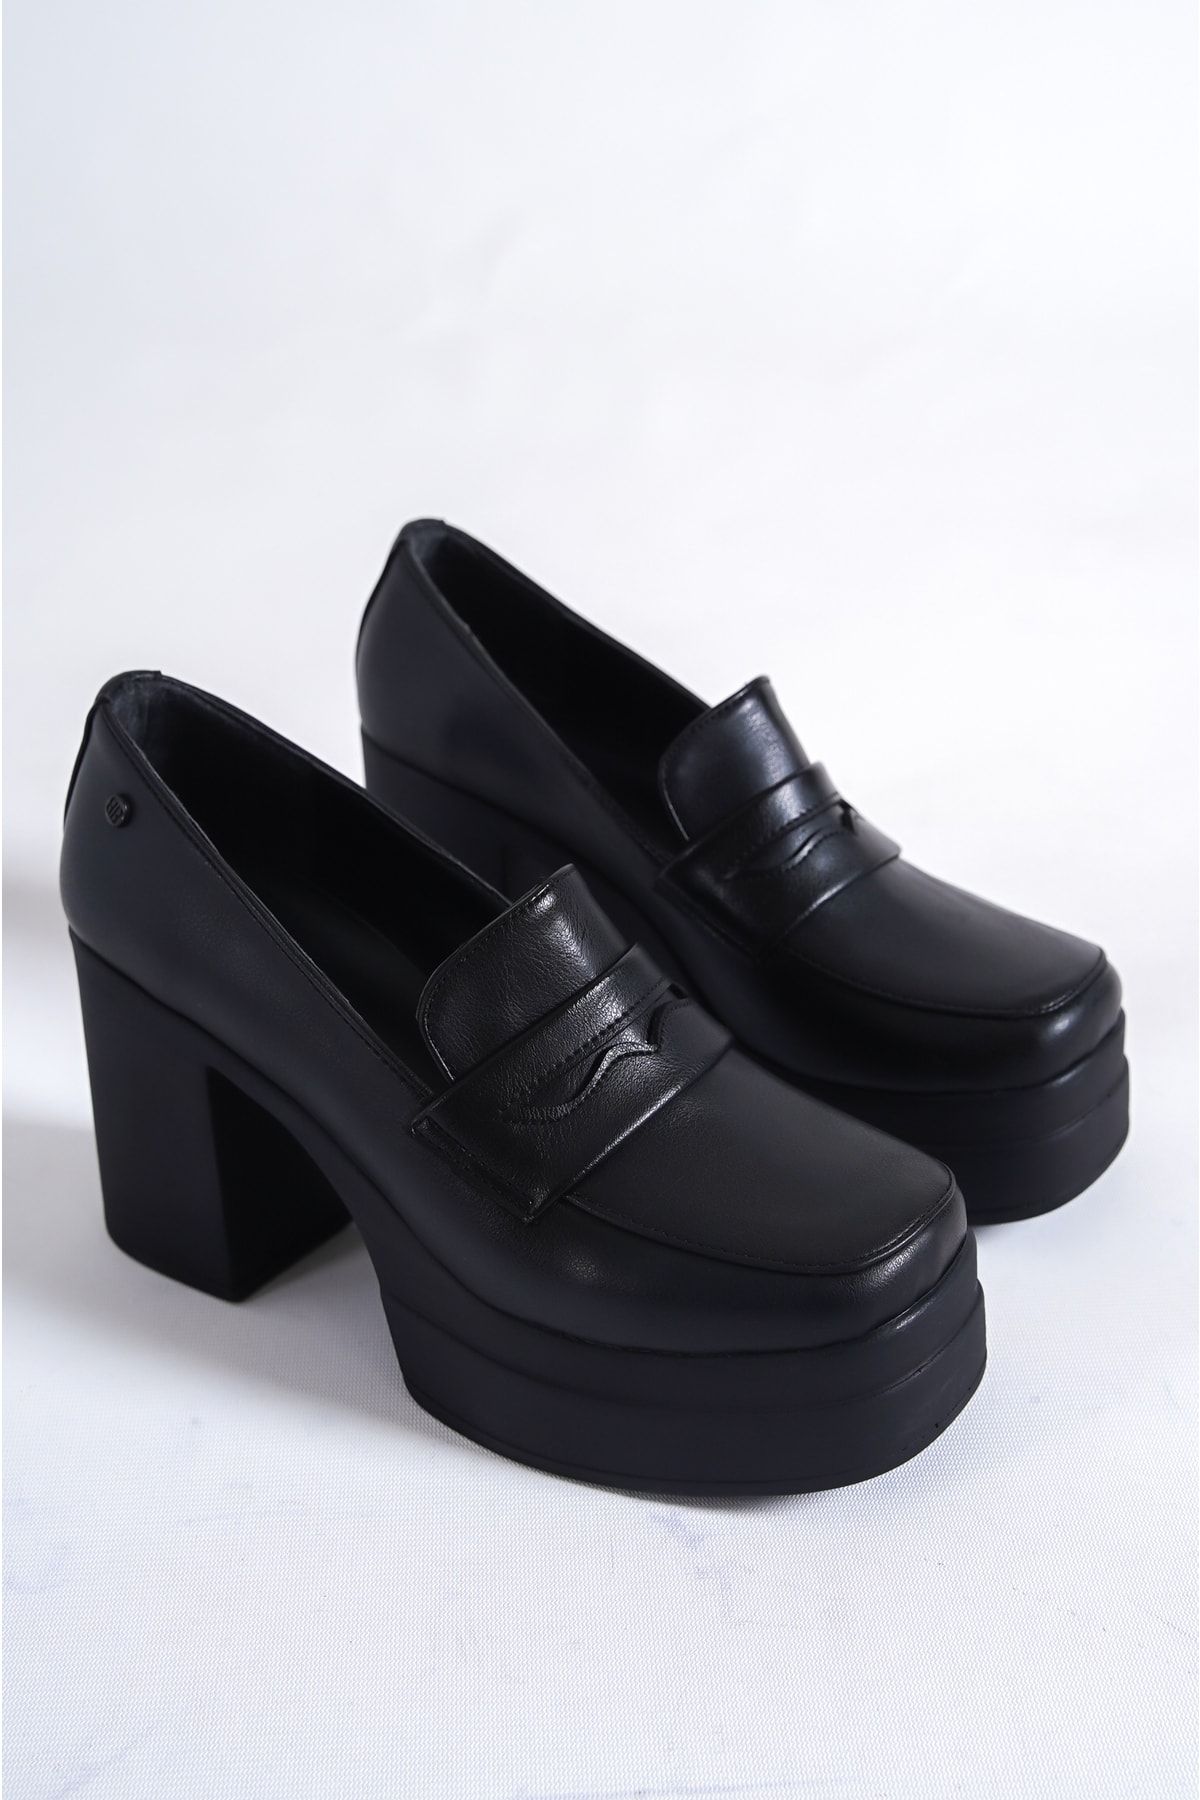 bolemo Siyah Kadın Topuklu Oxford Loafer Ayakkabı